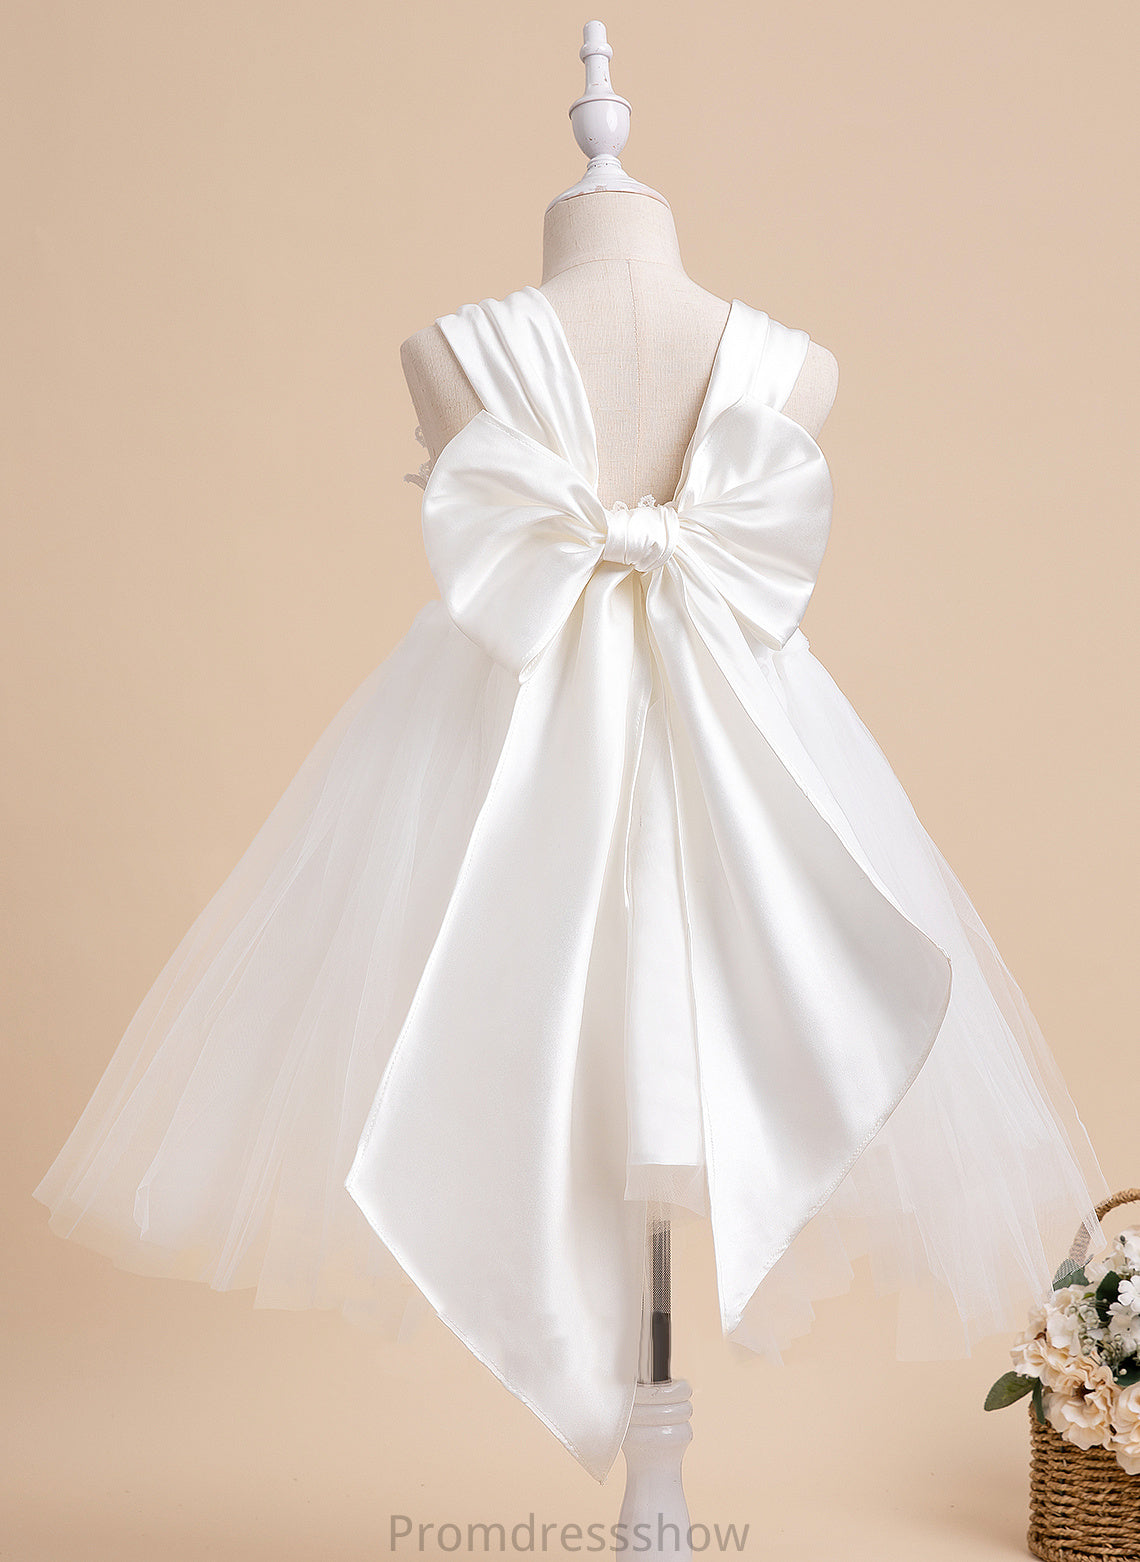 Bow(s) Sleeveless Flower Dress Neckline Paula Ball-Gown/Princess Girl Square Flower Girl Dresses - With Tulle Knee-length